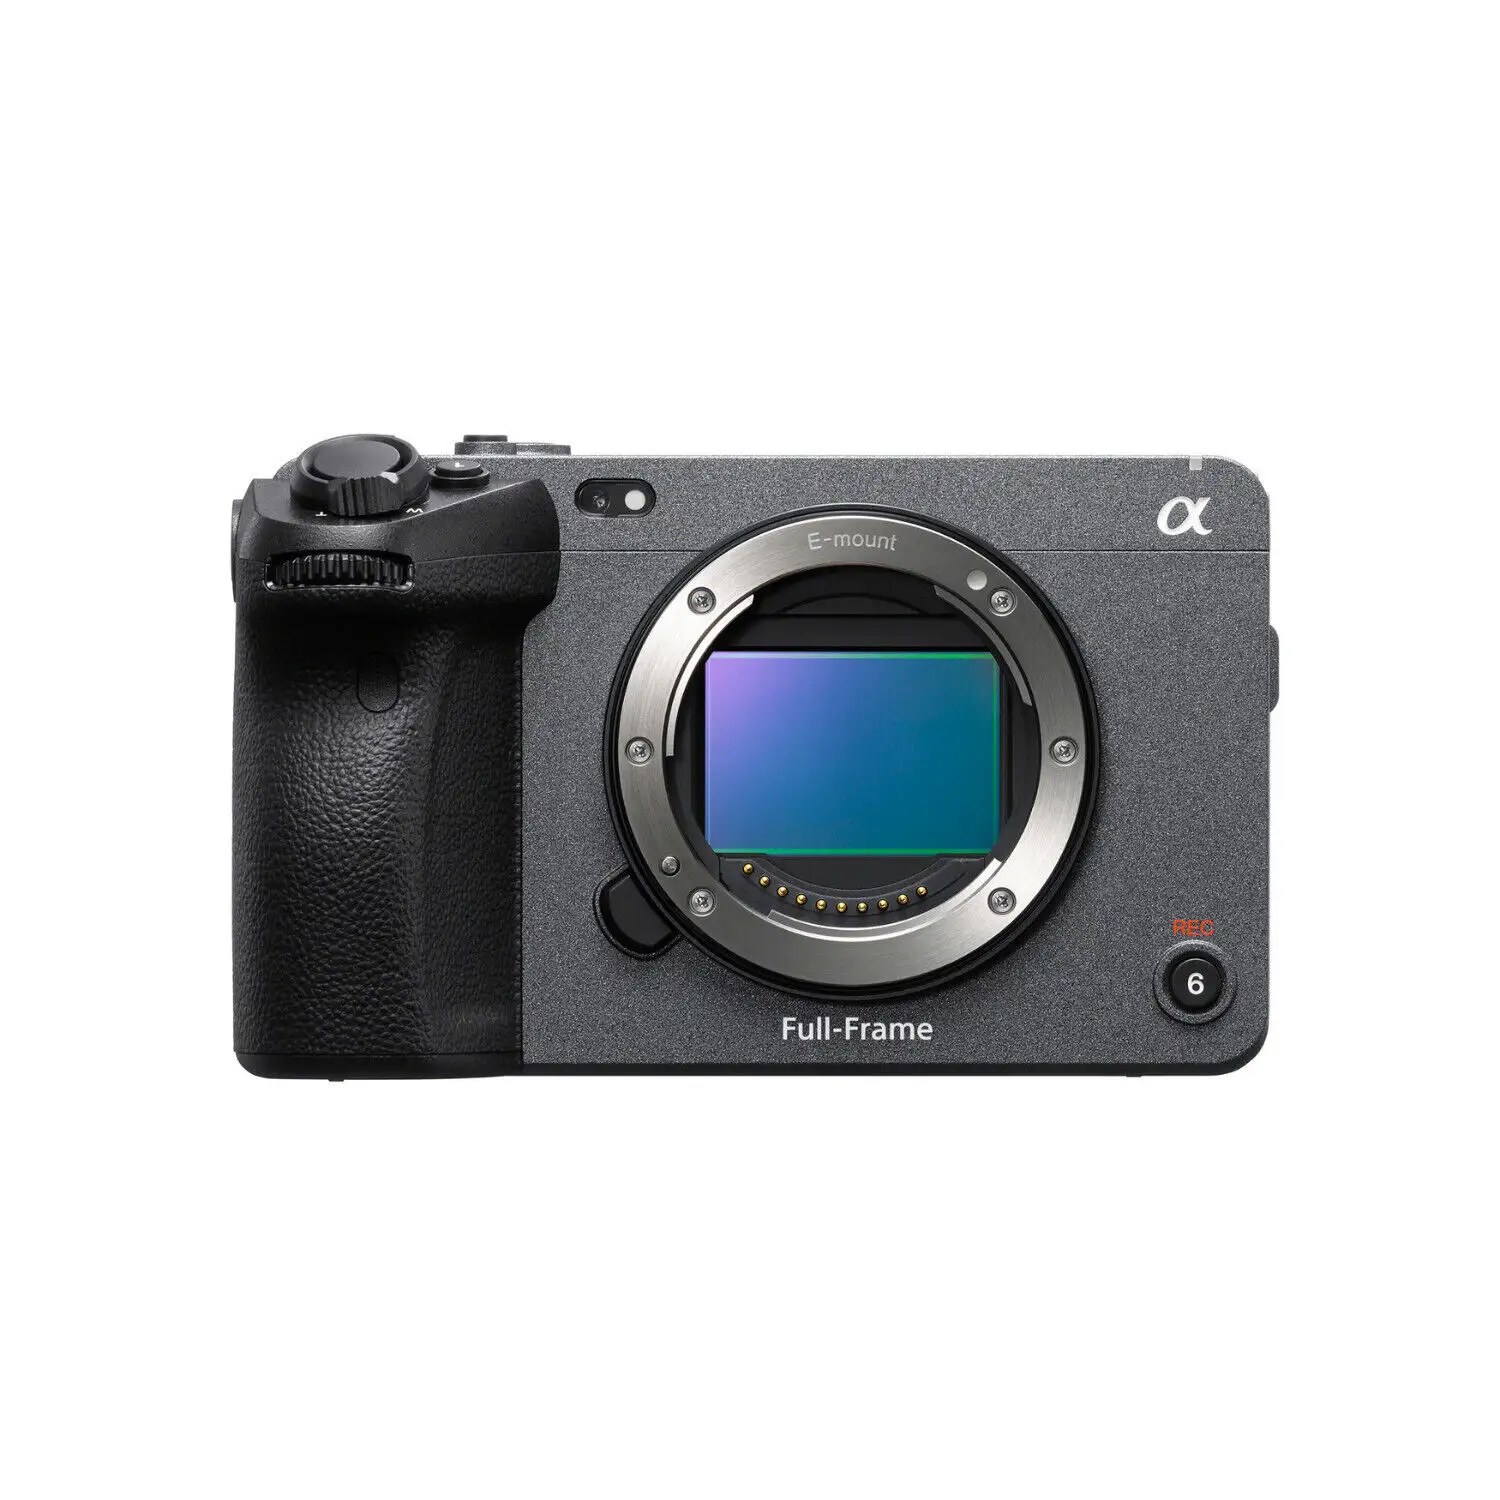 FX3 kamera bioskop Digital profesional, lensa kamera Digital bingkai penuh eksklusif baru